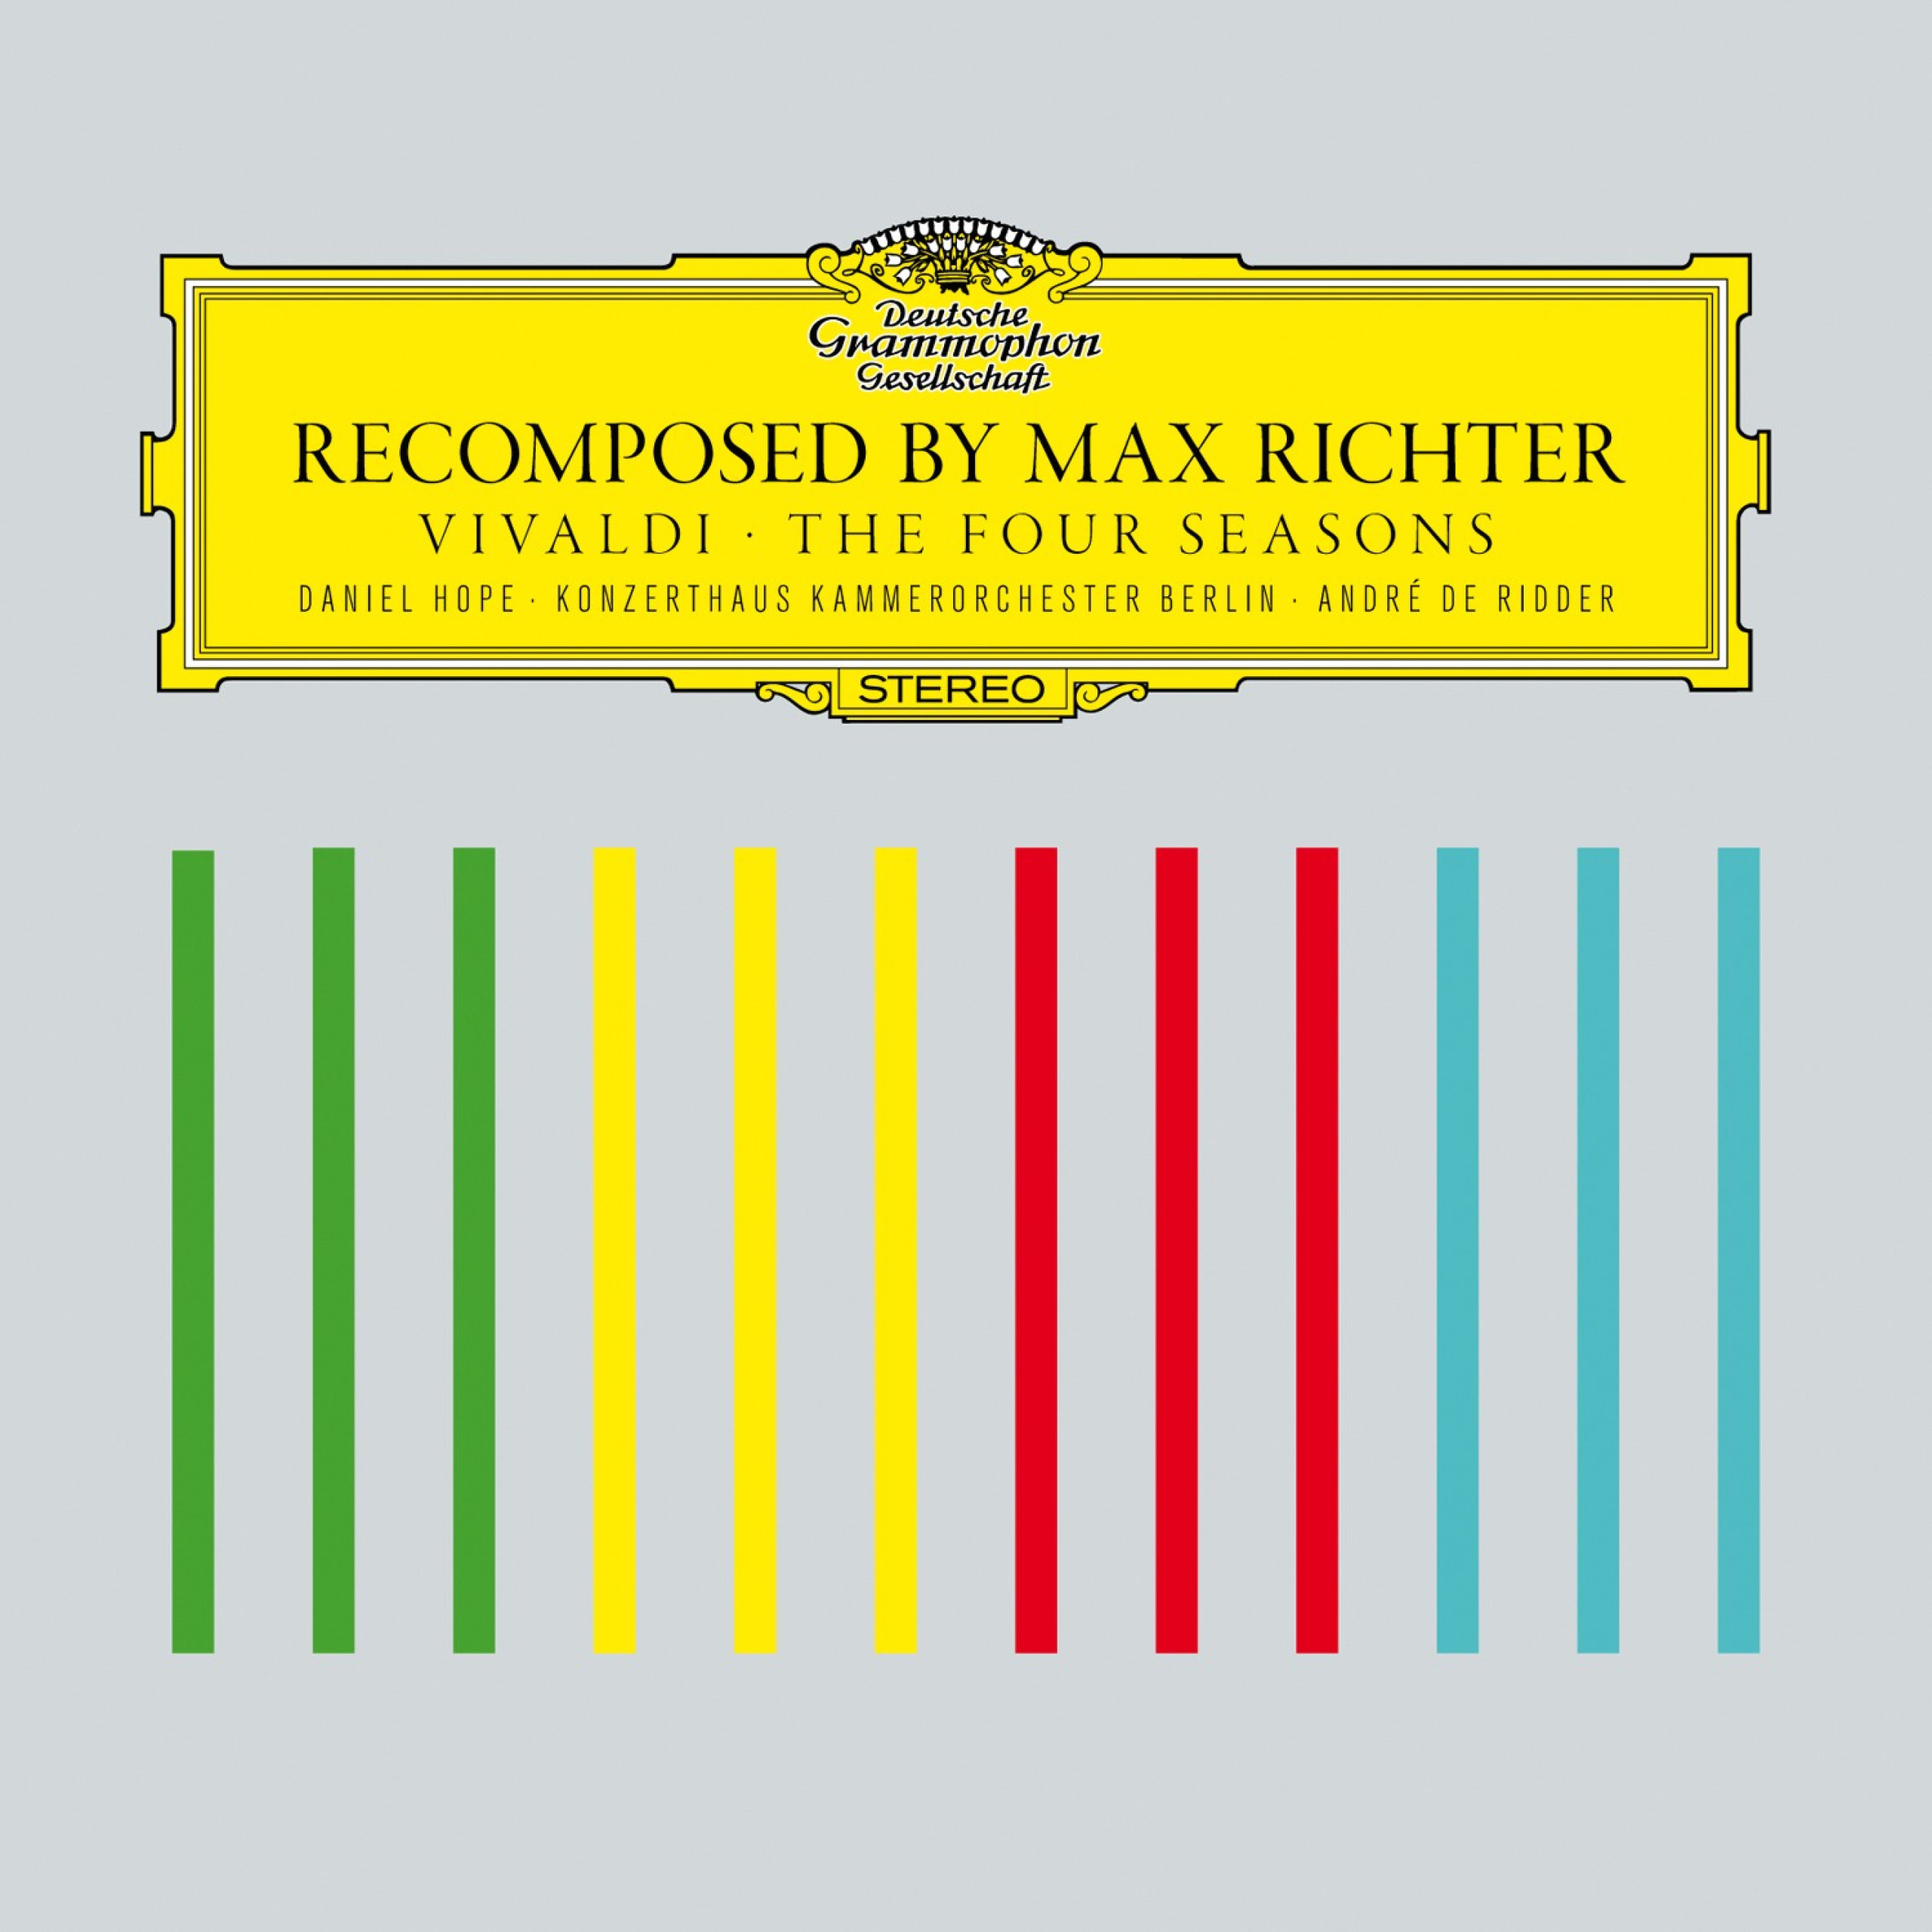 Max Richter & André de Ridder on Max Richter Recomposed: Vivaldi